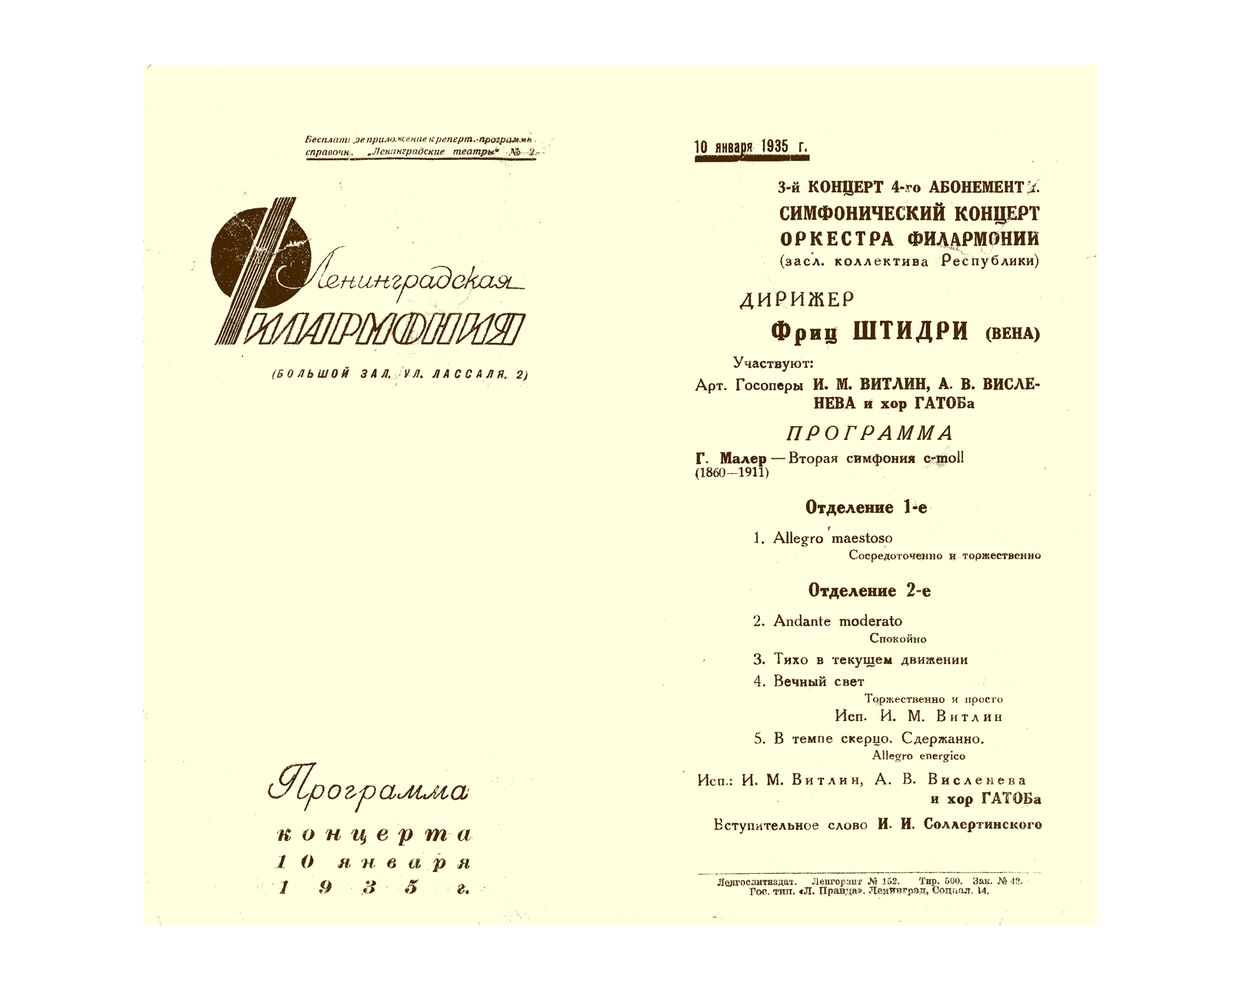 Симфонический концерт
Дирижер – Фриц Штидри